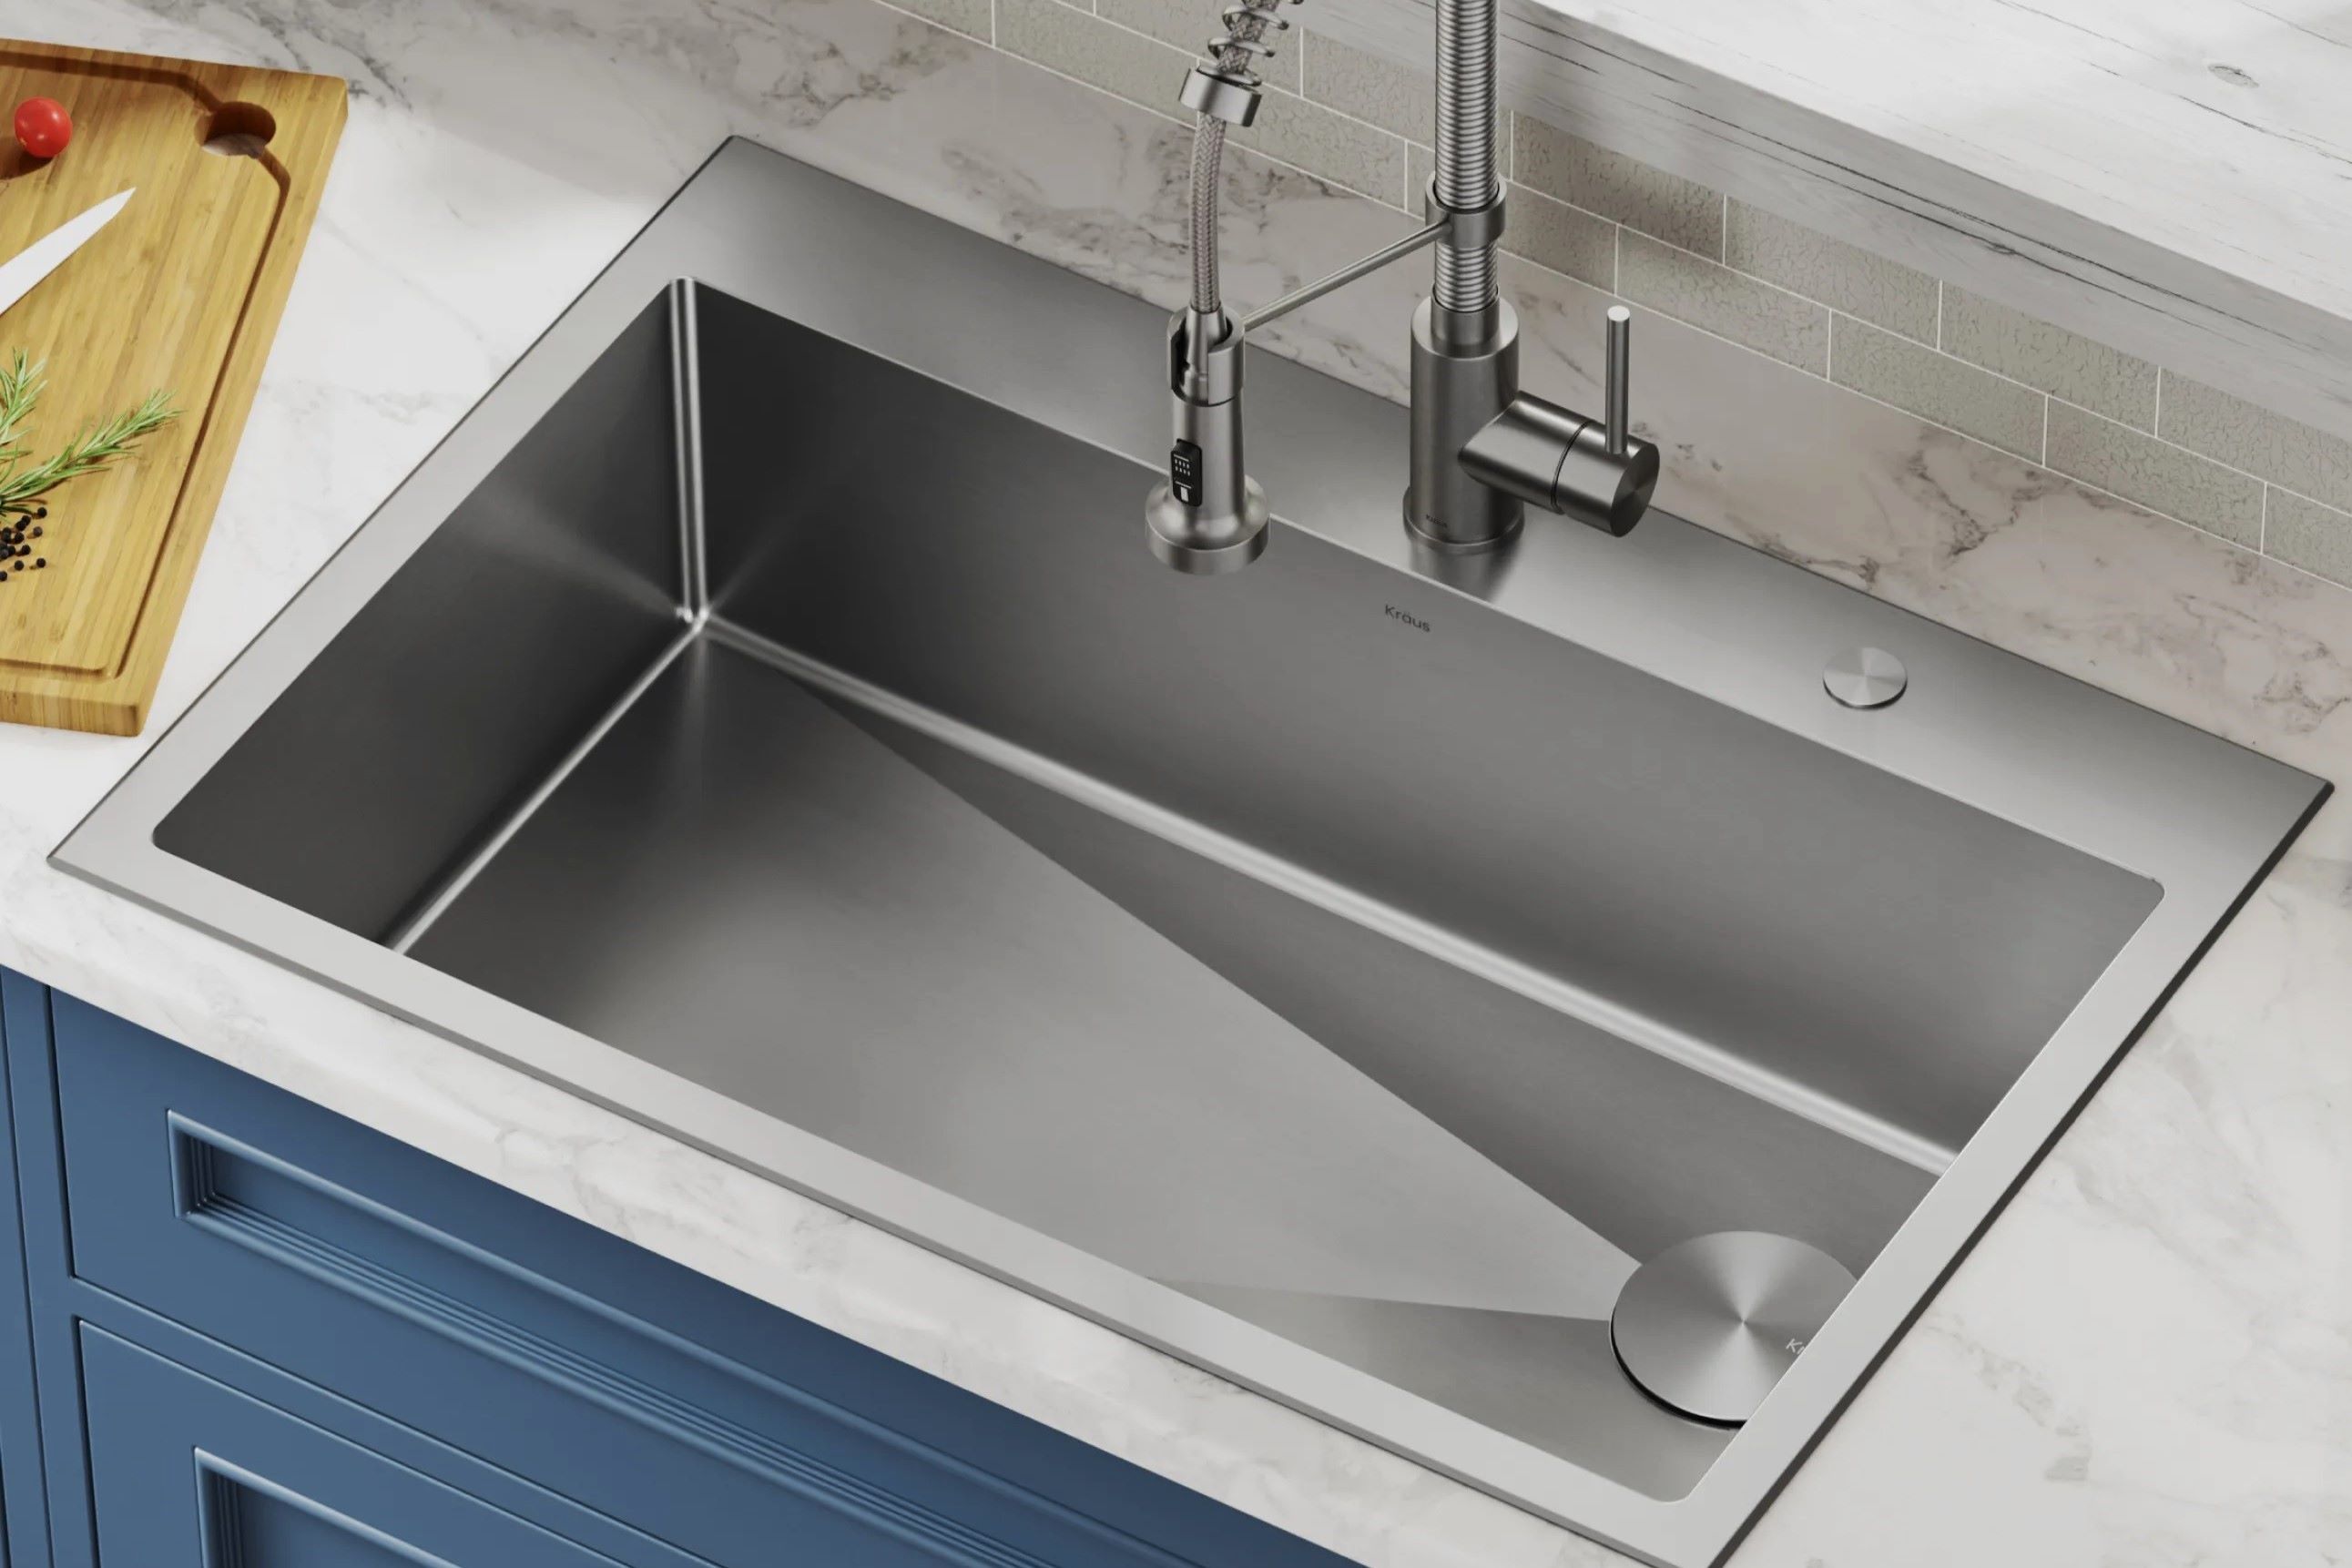 The Shocking Reason Behind A Kitchen Sink's Instant Water Pressure Plummet!